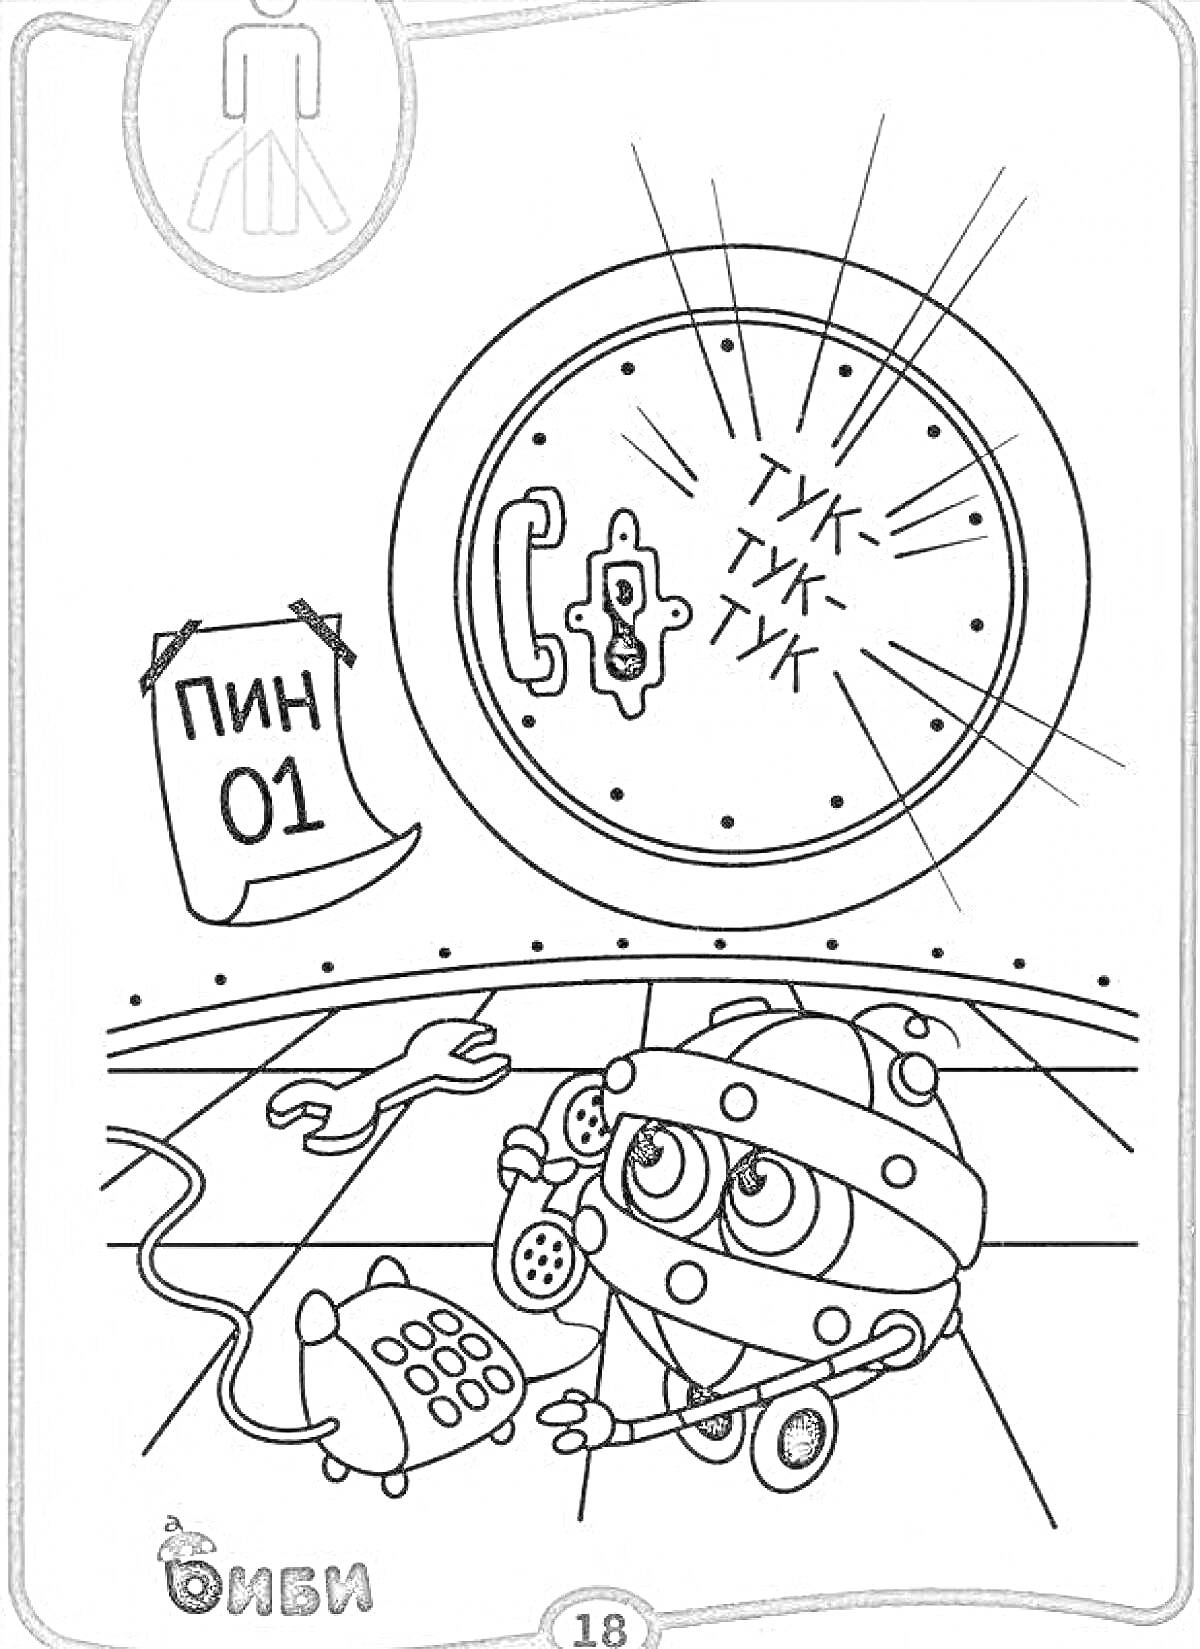 Раскраска Железная няня с телефоном, дверь с глазком и стуком, календарь с надписью ПИН 01, гаечный ключ на полу